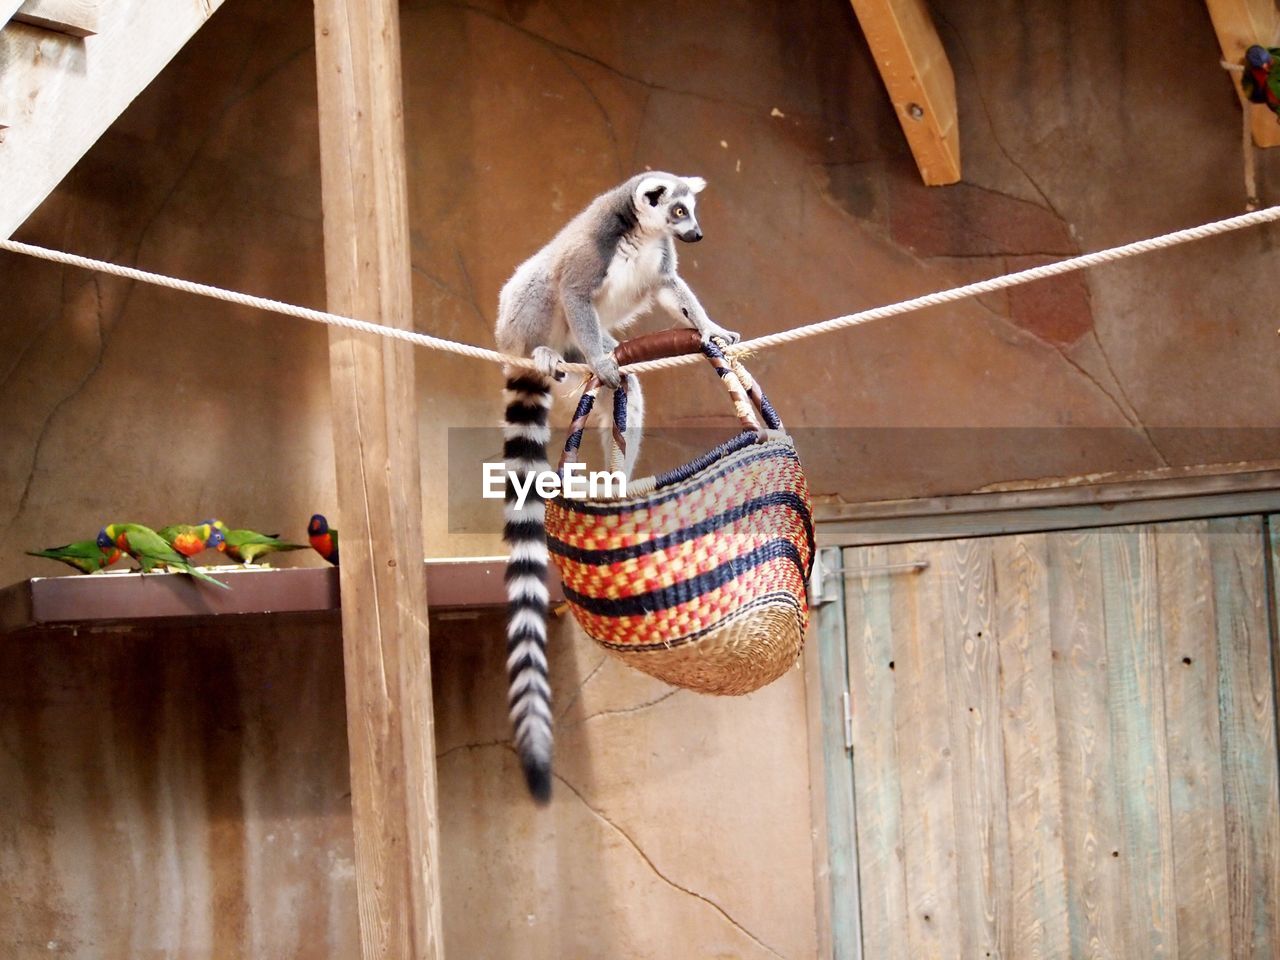 Lemur on a basket in zoo